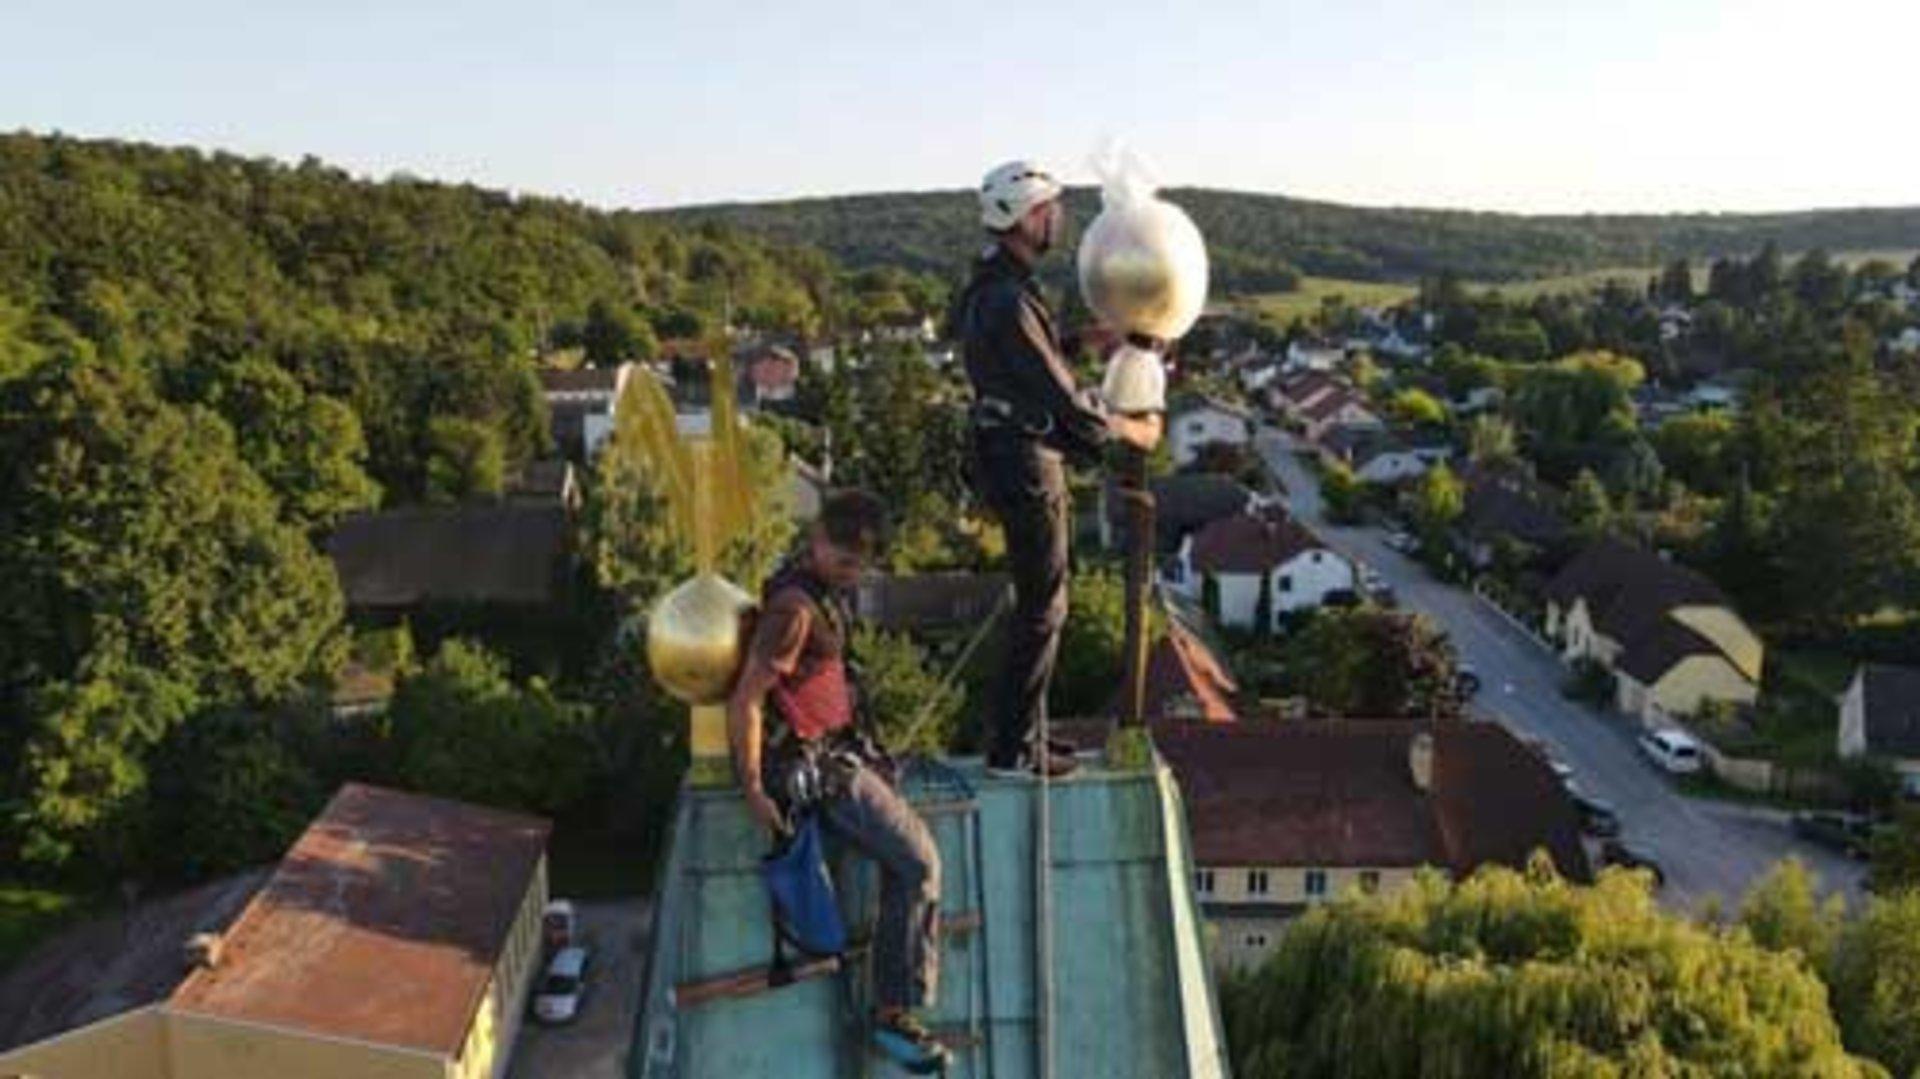 Weihbischof und Pfarrer erklommen Kirchturm im Bezirk Mistelbach